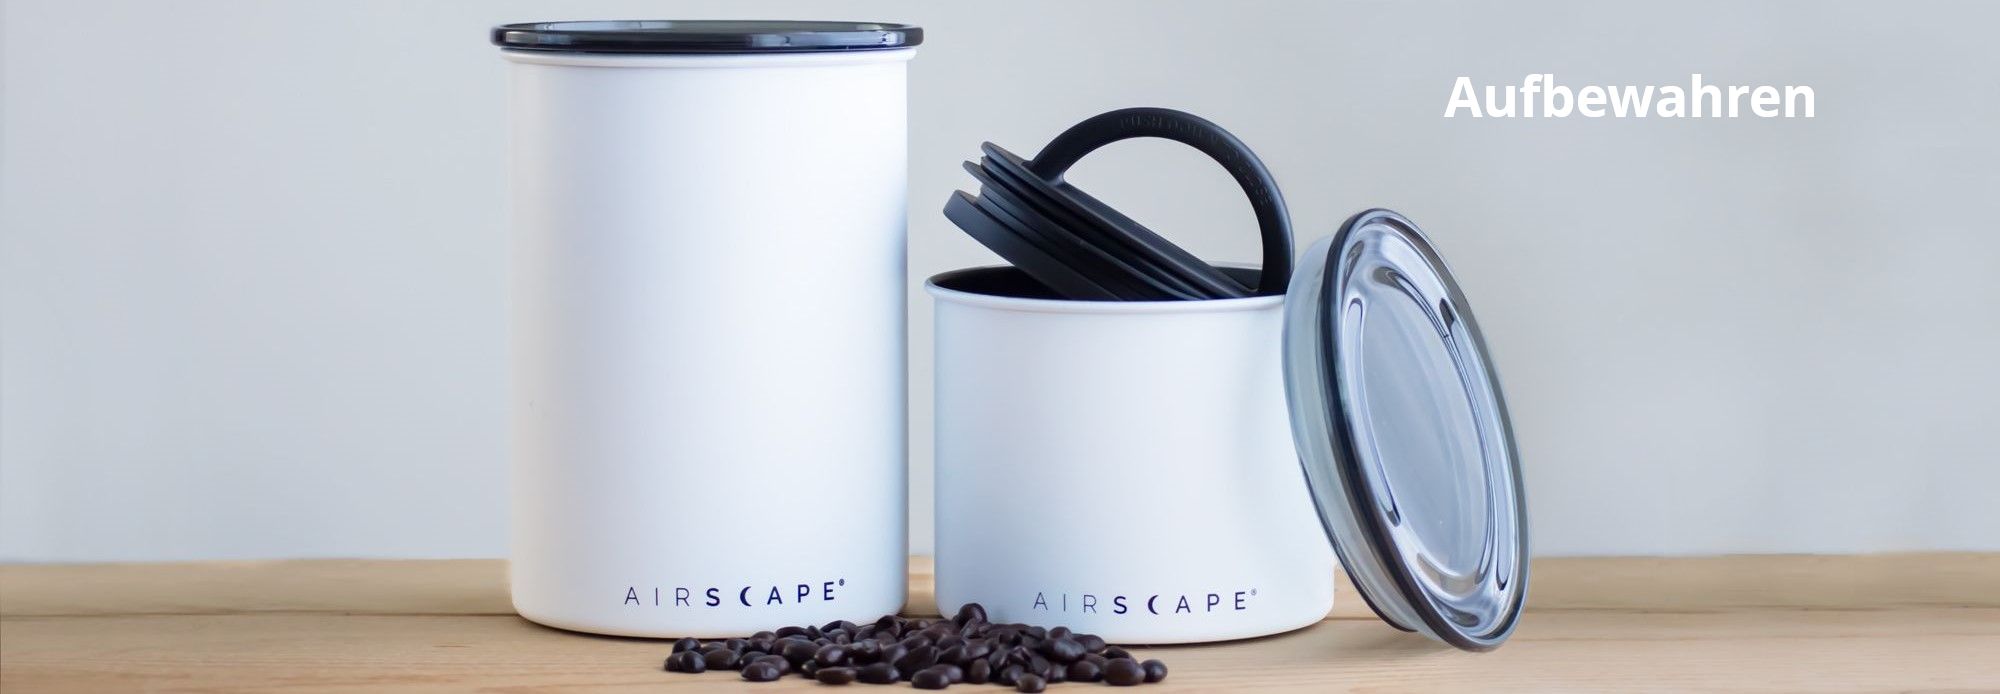 Airscape Frischhaltedosen für dein Kaffee